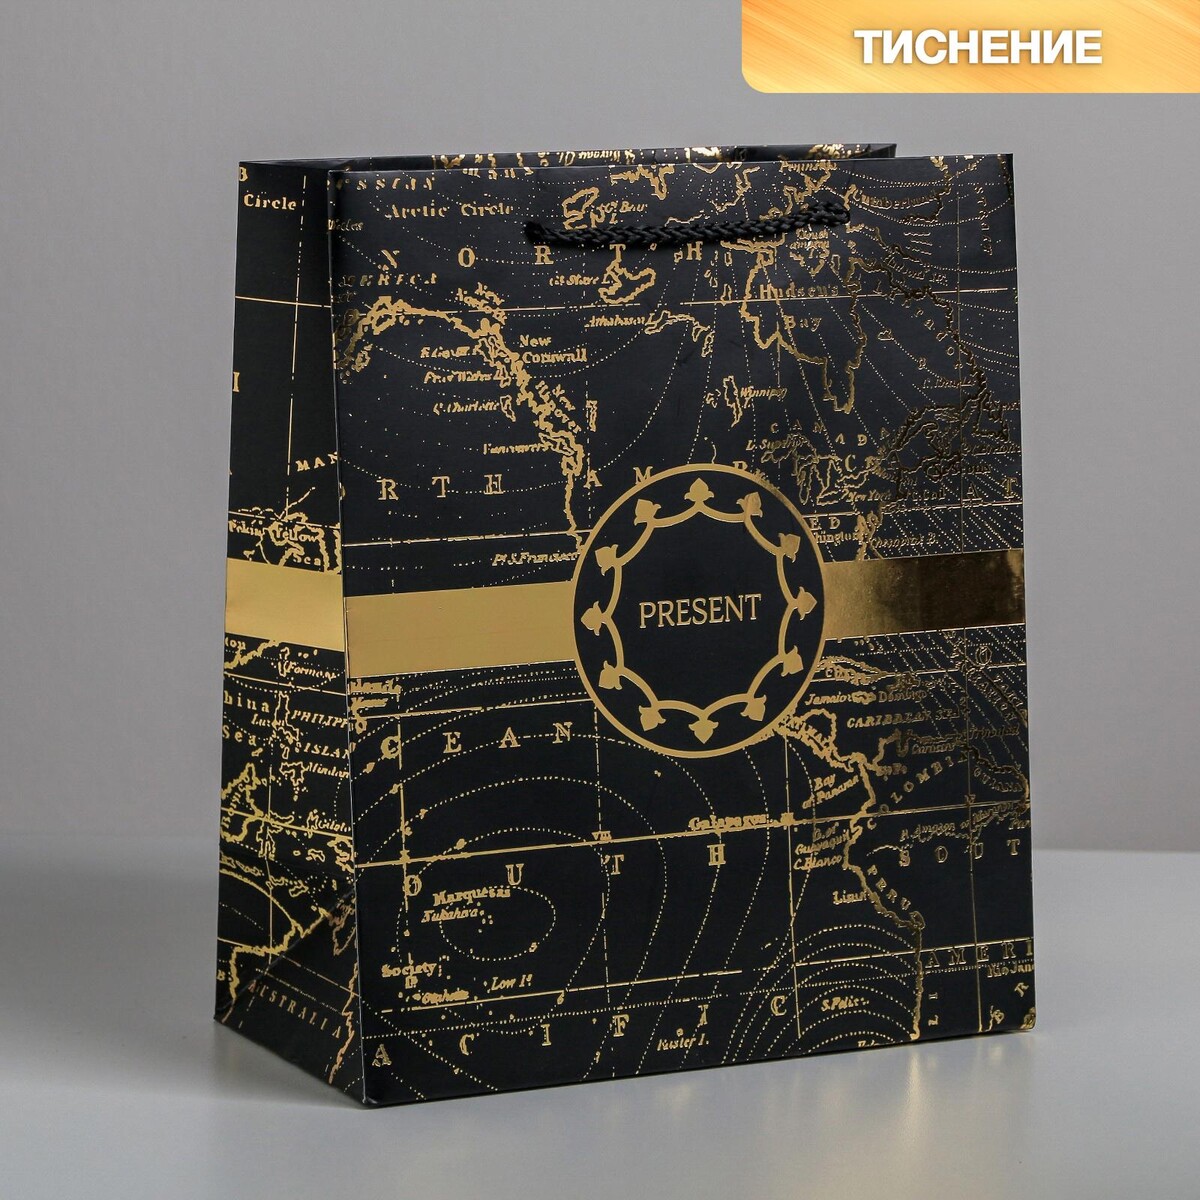 Пакет подарочный ламинированный вертикальный, упаковка, gold present, ml 23 х 27 х 11,5 см зажимы для бумаг 32мм meshu rose gold 4шт пакет с европодвесом